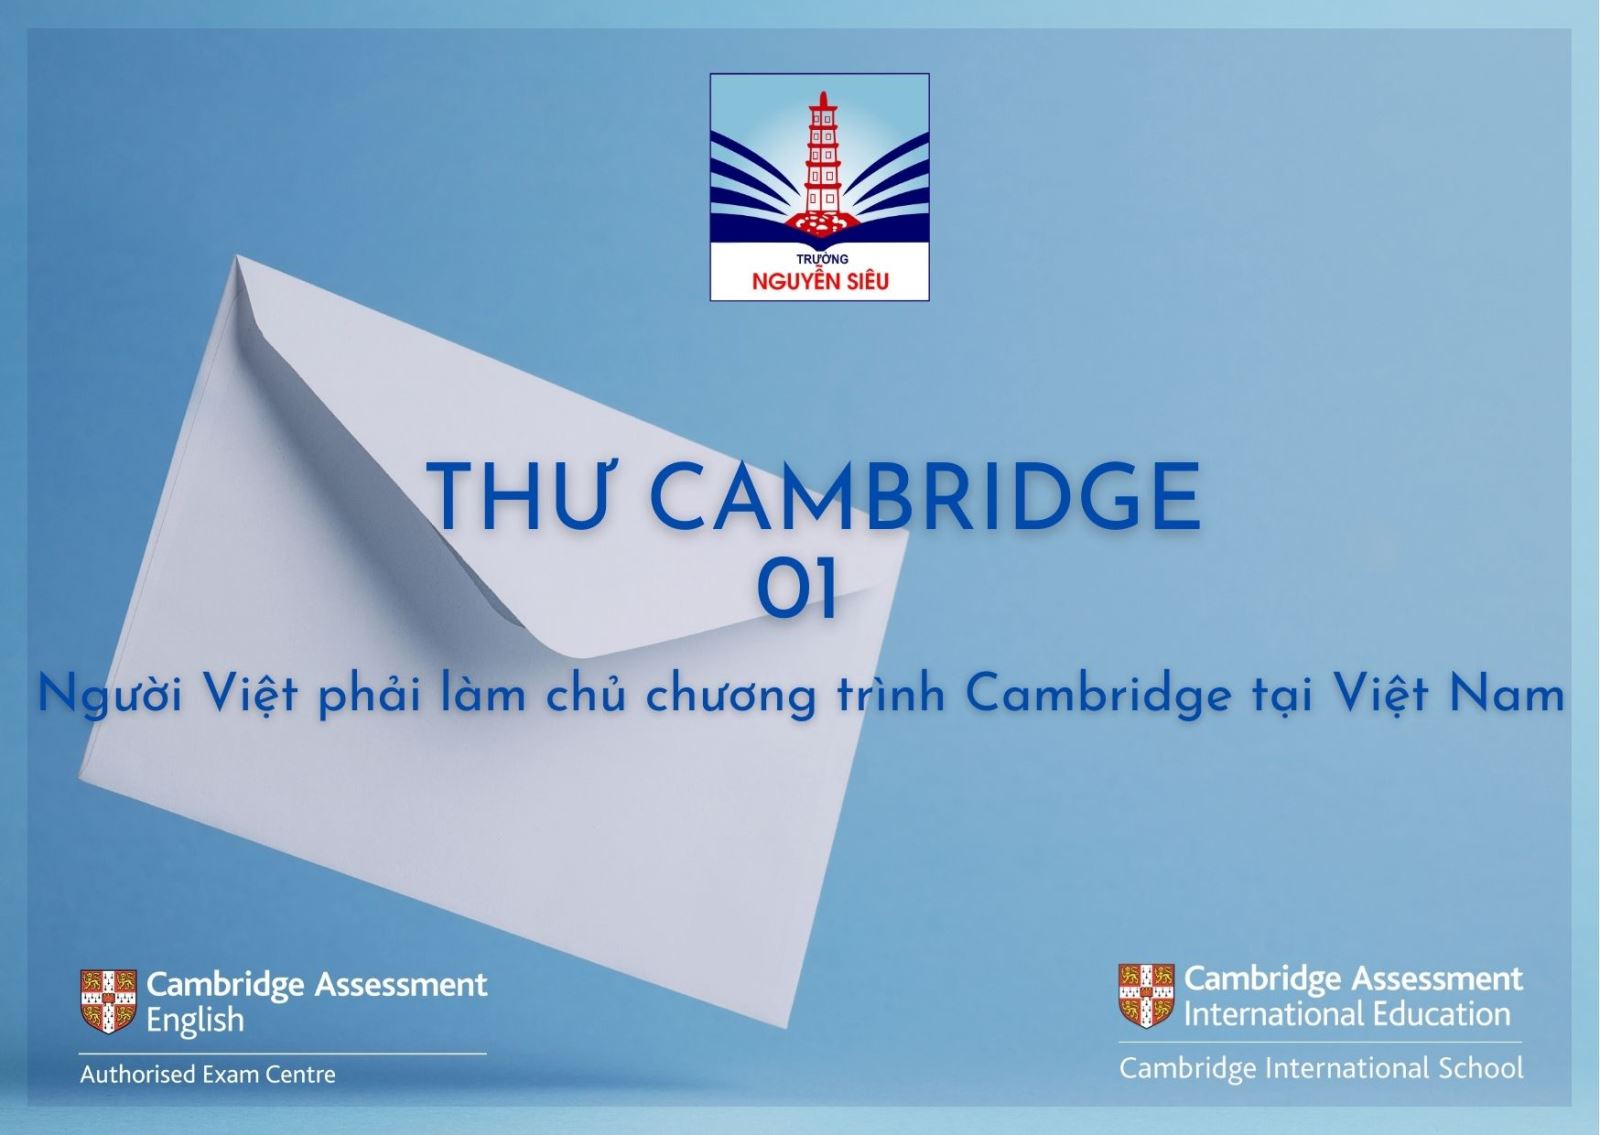 Người Việt phải làm chủ chương trình Cambridge tại Việt Nam